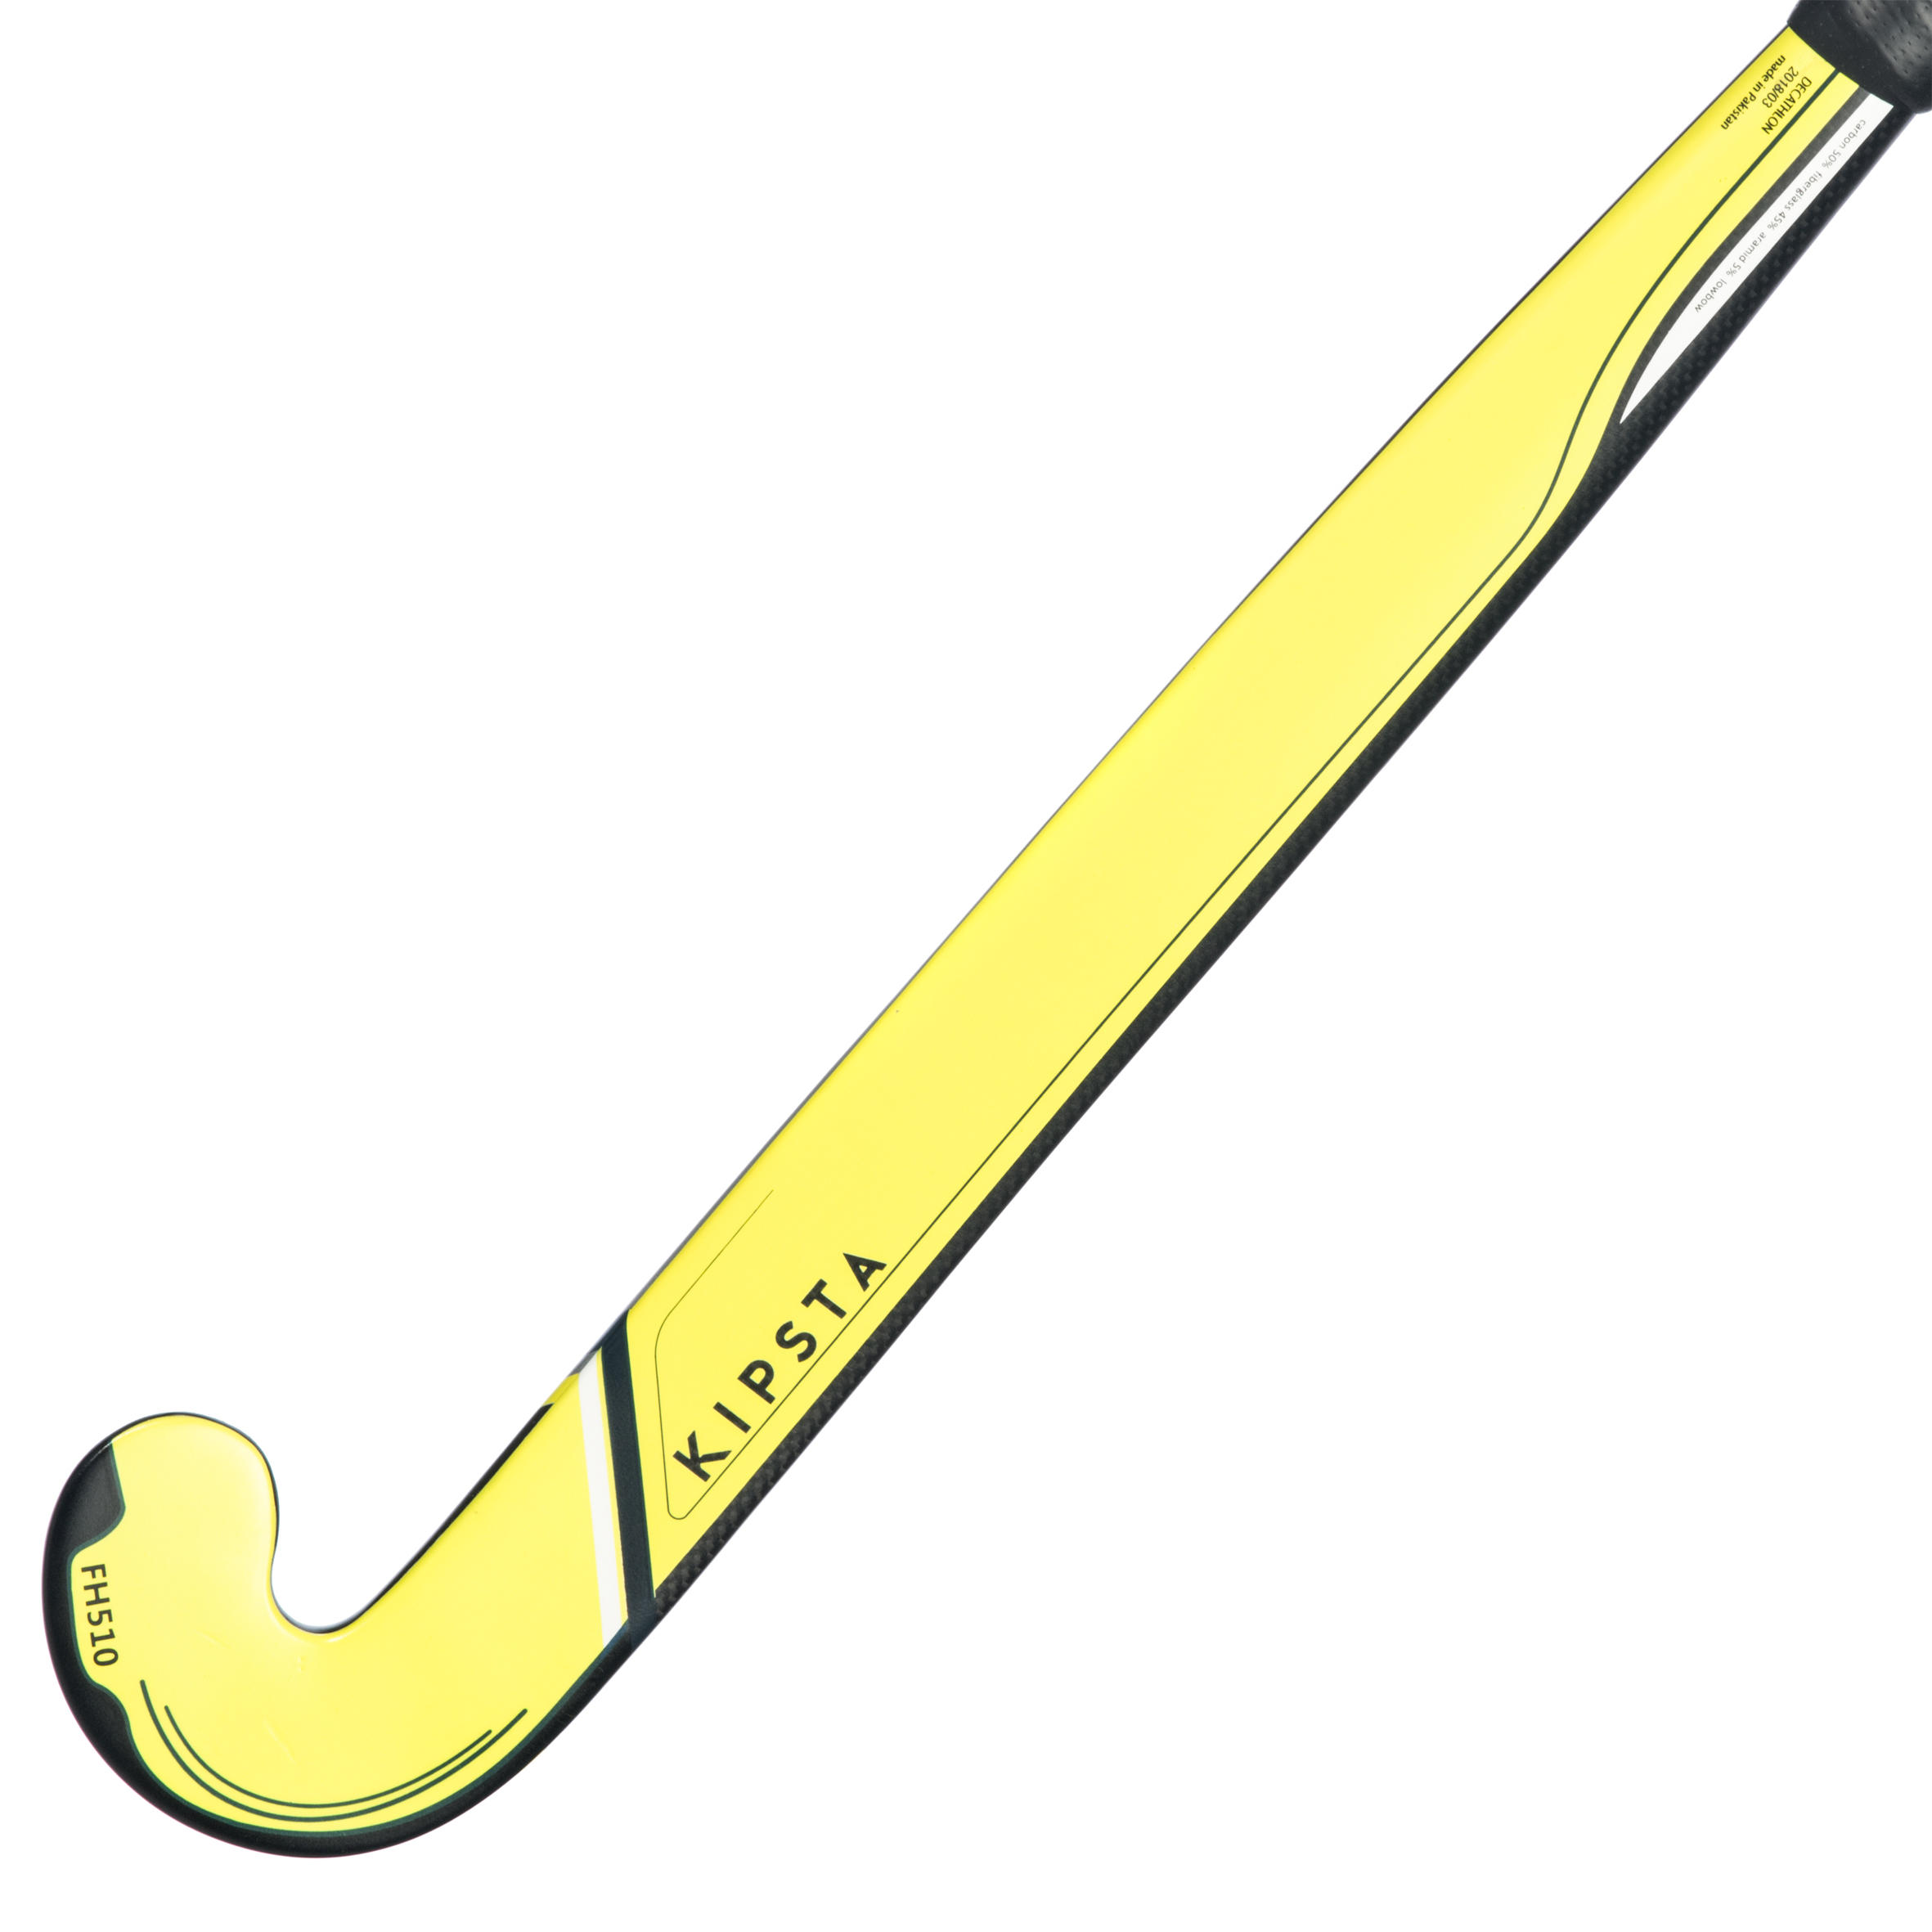 kipsta hockey stick